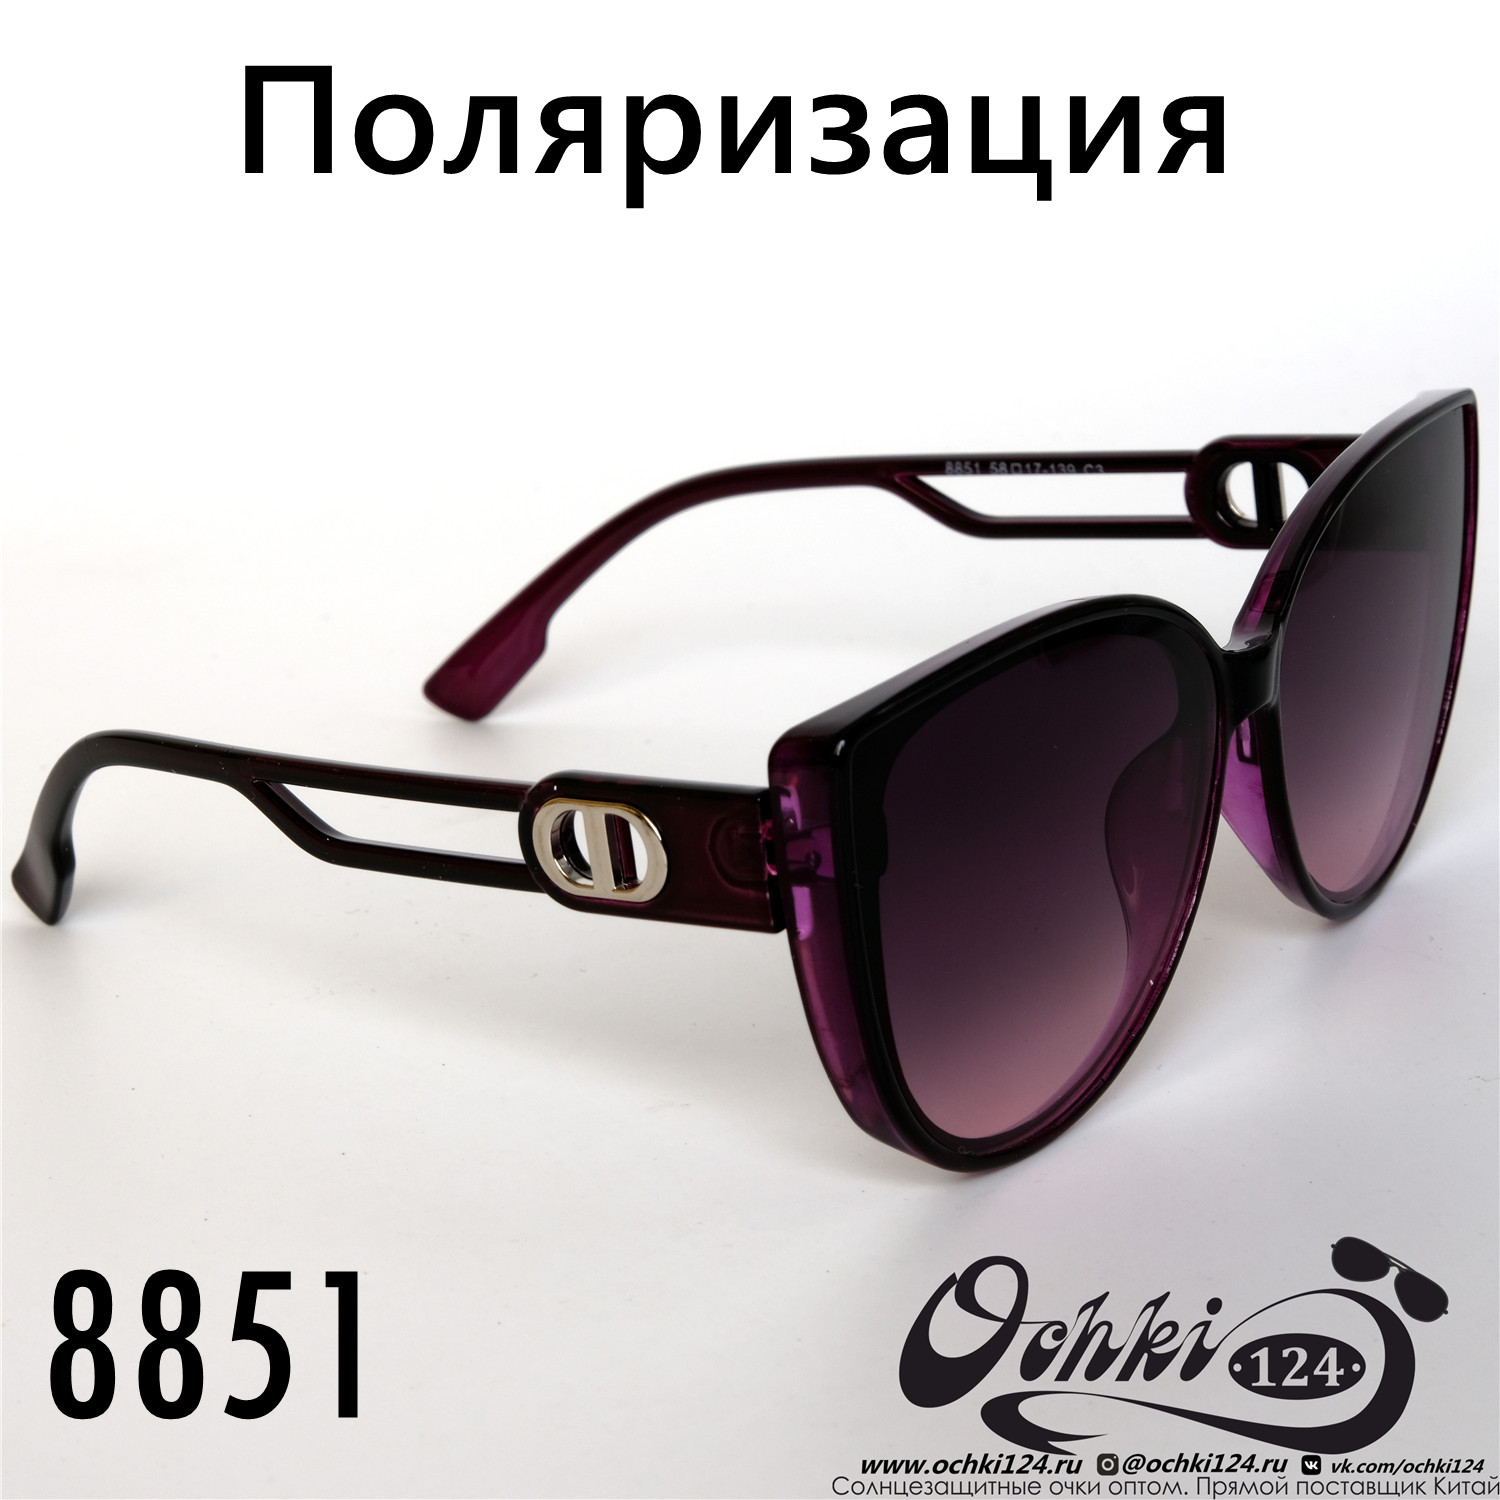  Солнцезащитные очки картинка 2022 Женские Поляризованные Классический Aras 8851-3 